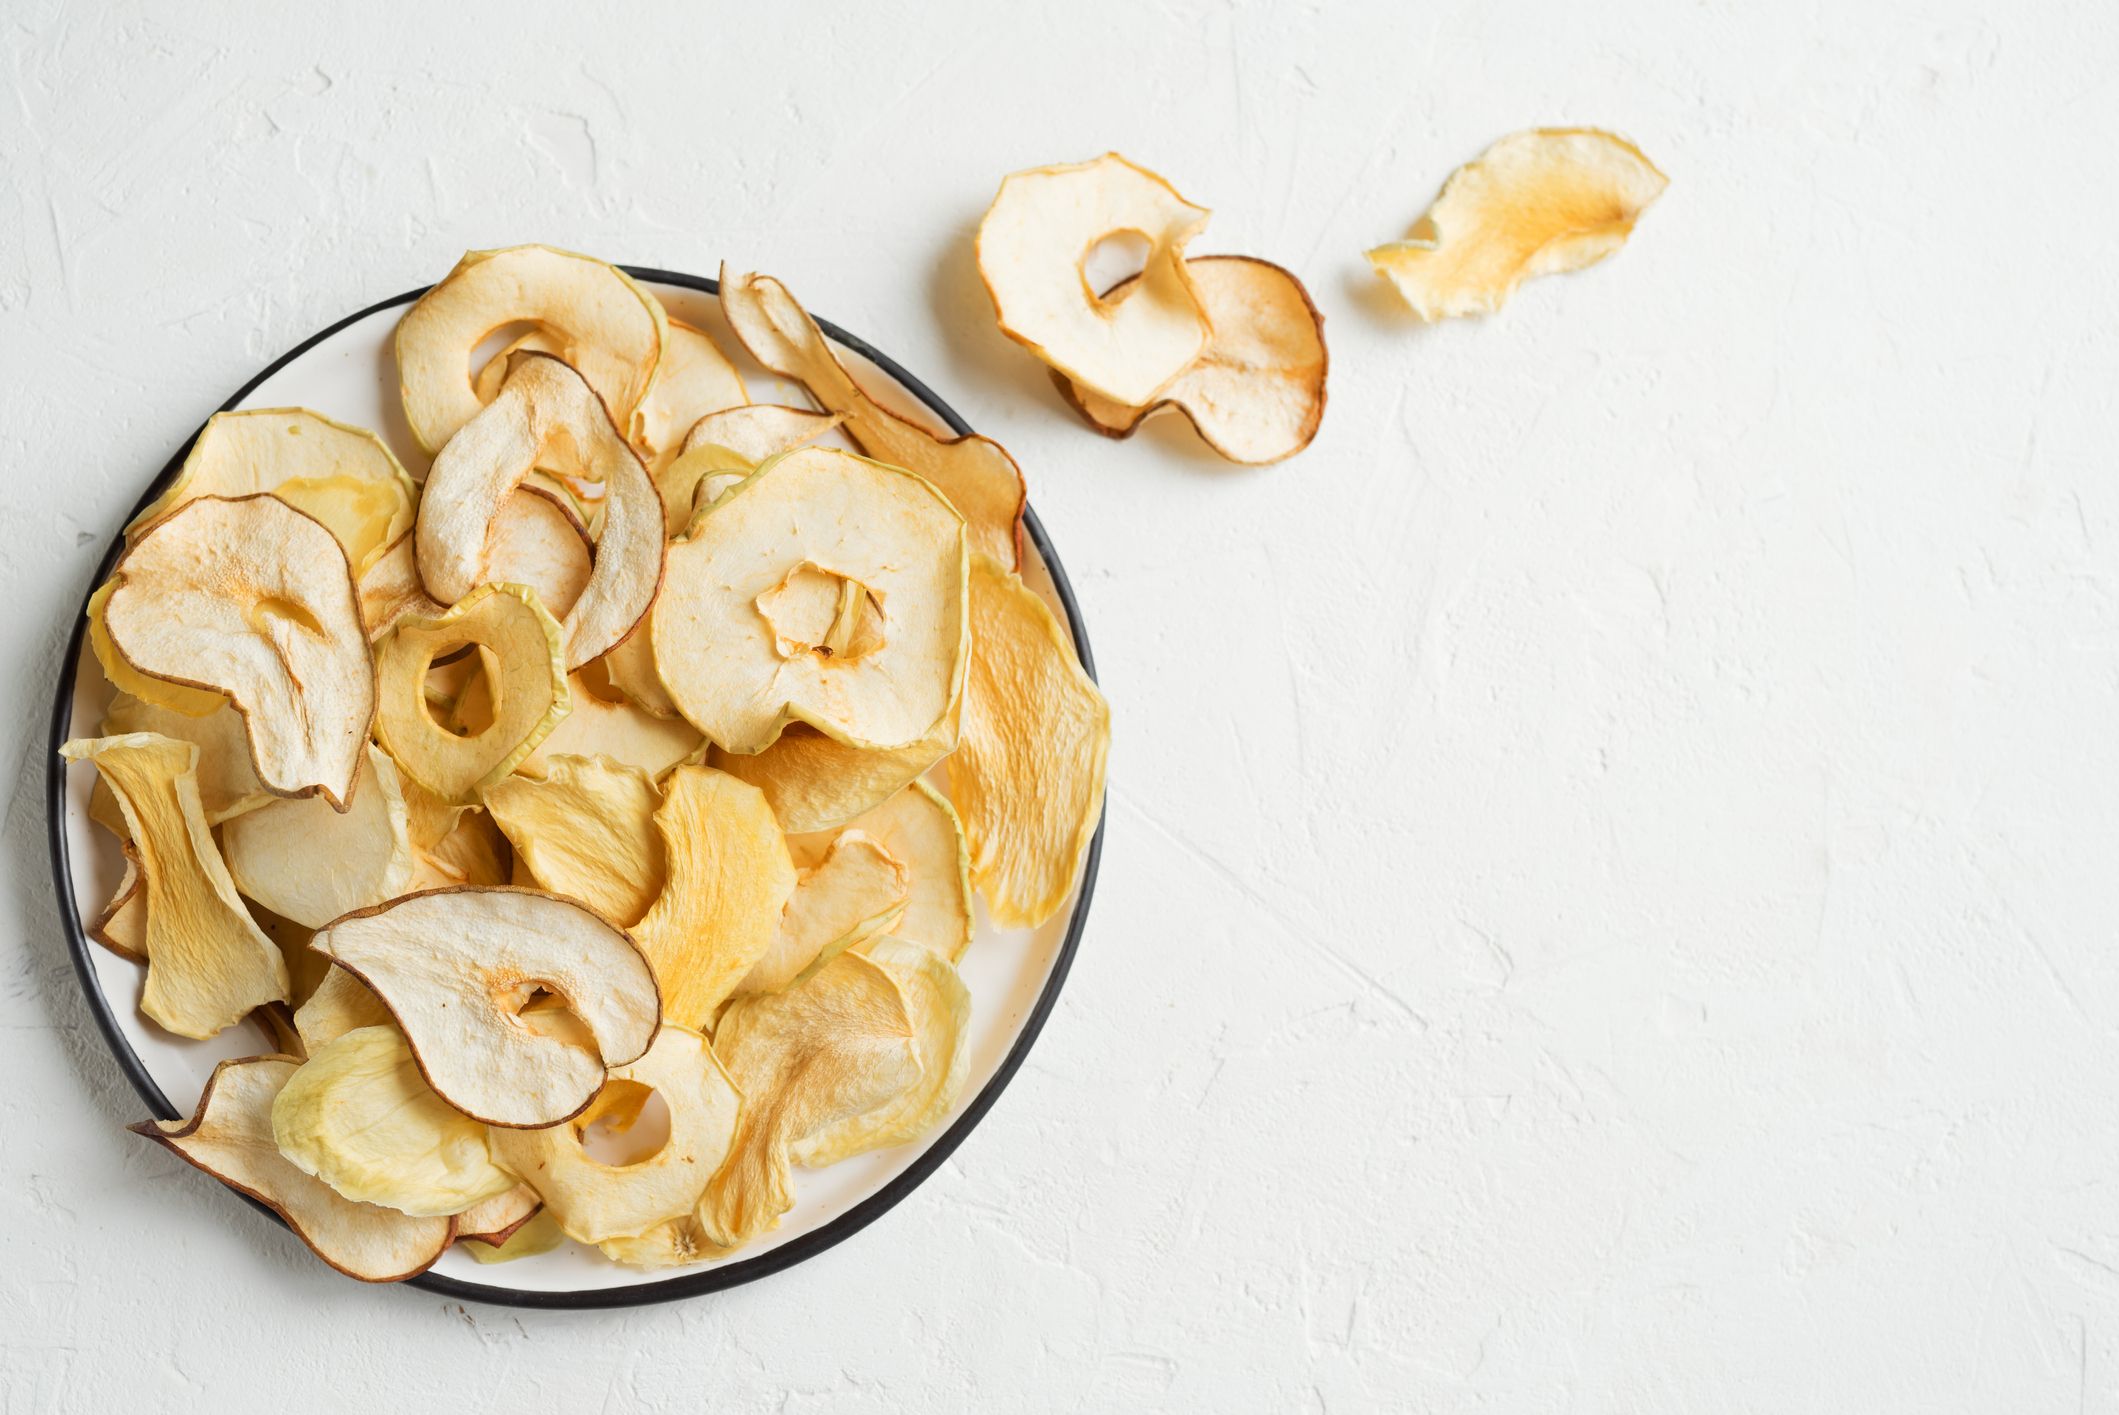 Gesunder Snack: Apfelchips aus der Mikrowelle